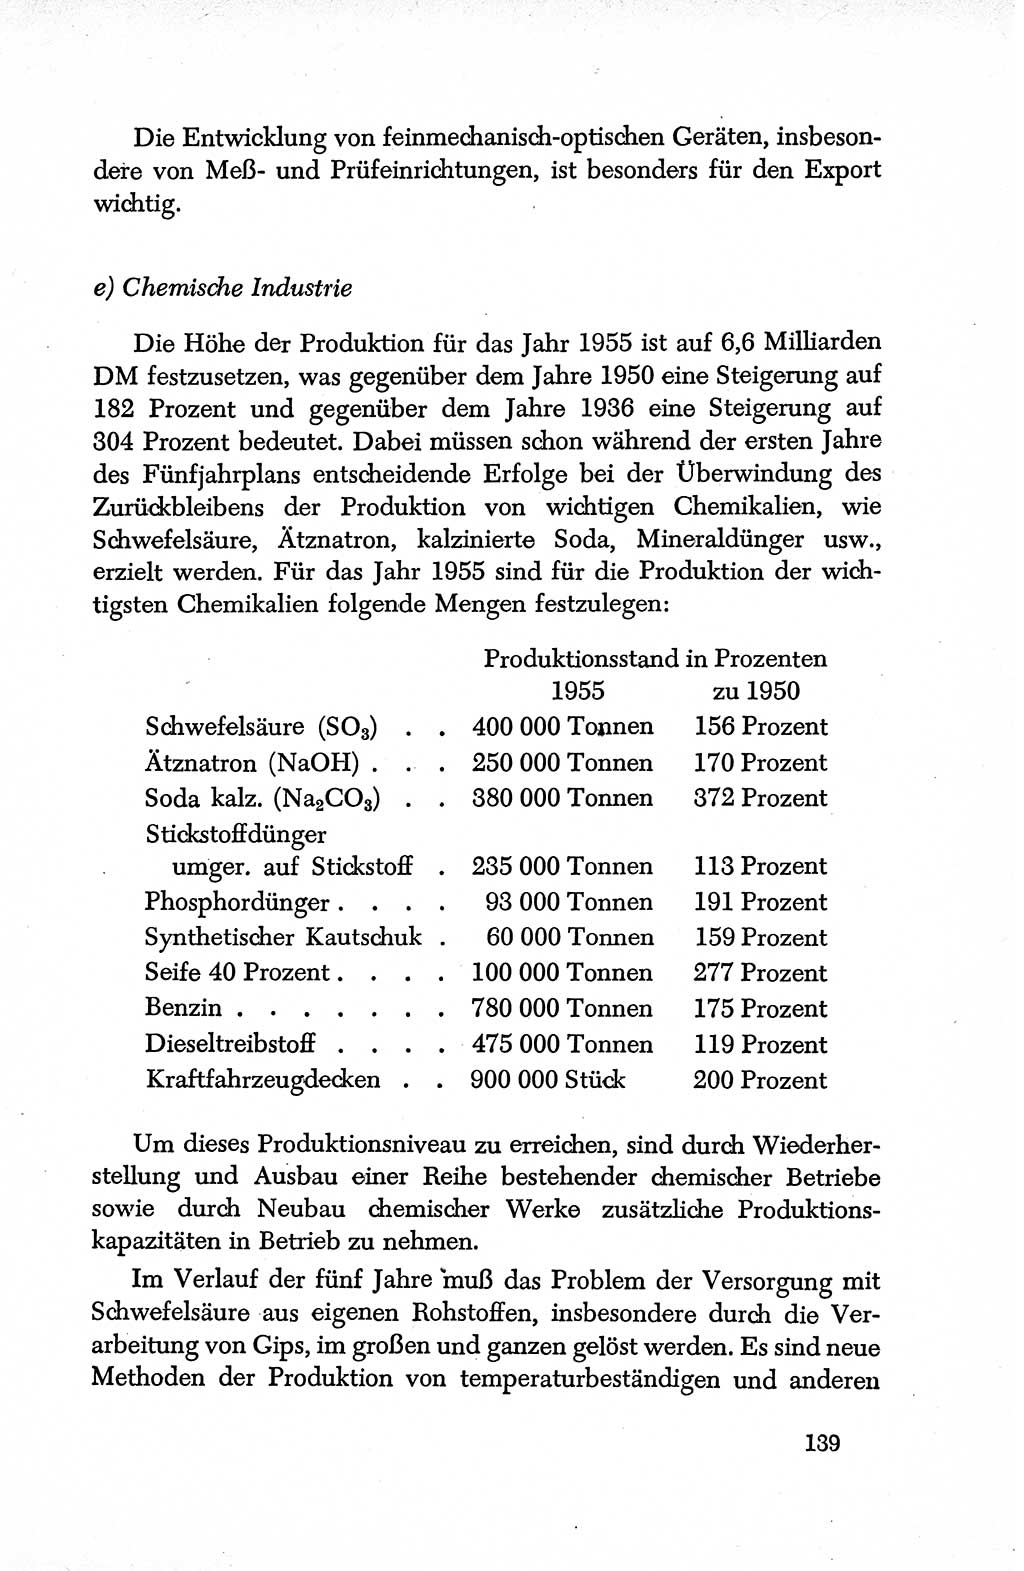 Dokumente der Sozialistischen Einheitspartei Deutschlands (SED) [Deutsche Demokratische Republik (DDR)] 1950-1952, Seite 139 (Dok. SED DDR 1950-1952, S. 139)